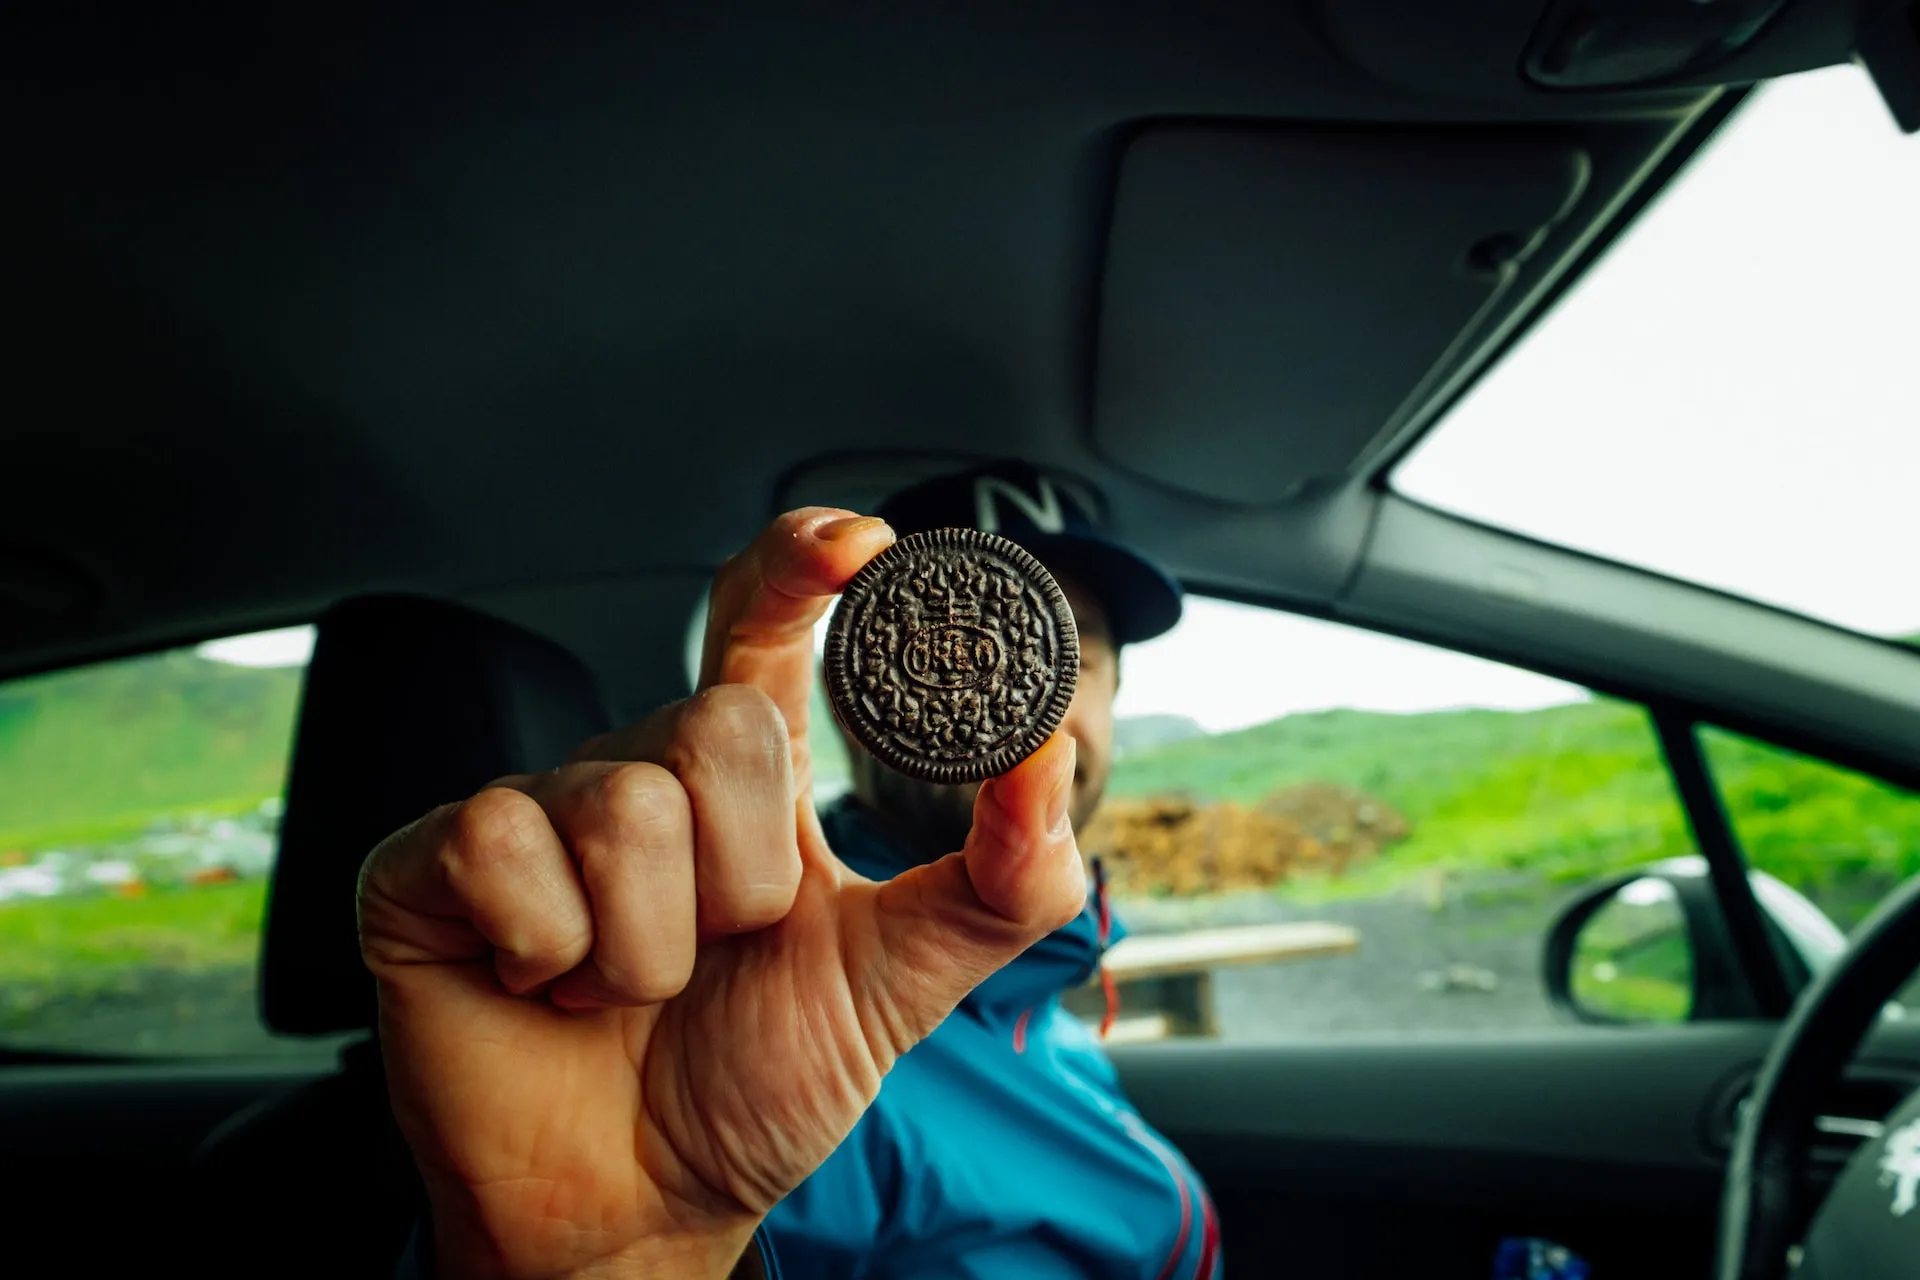 Best Junk Food Road Trip Snacks - Cookies